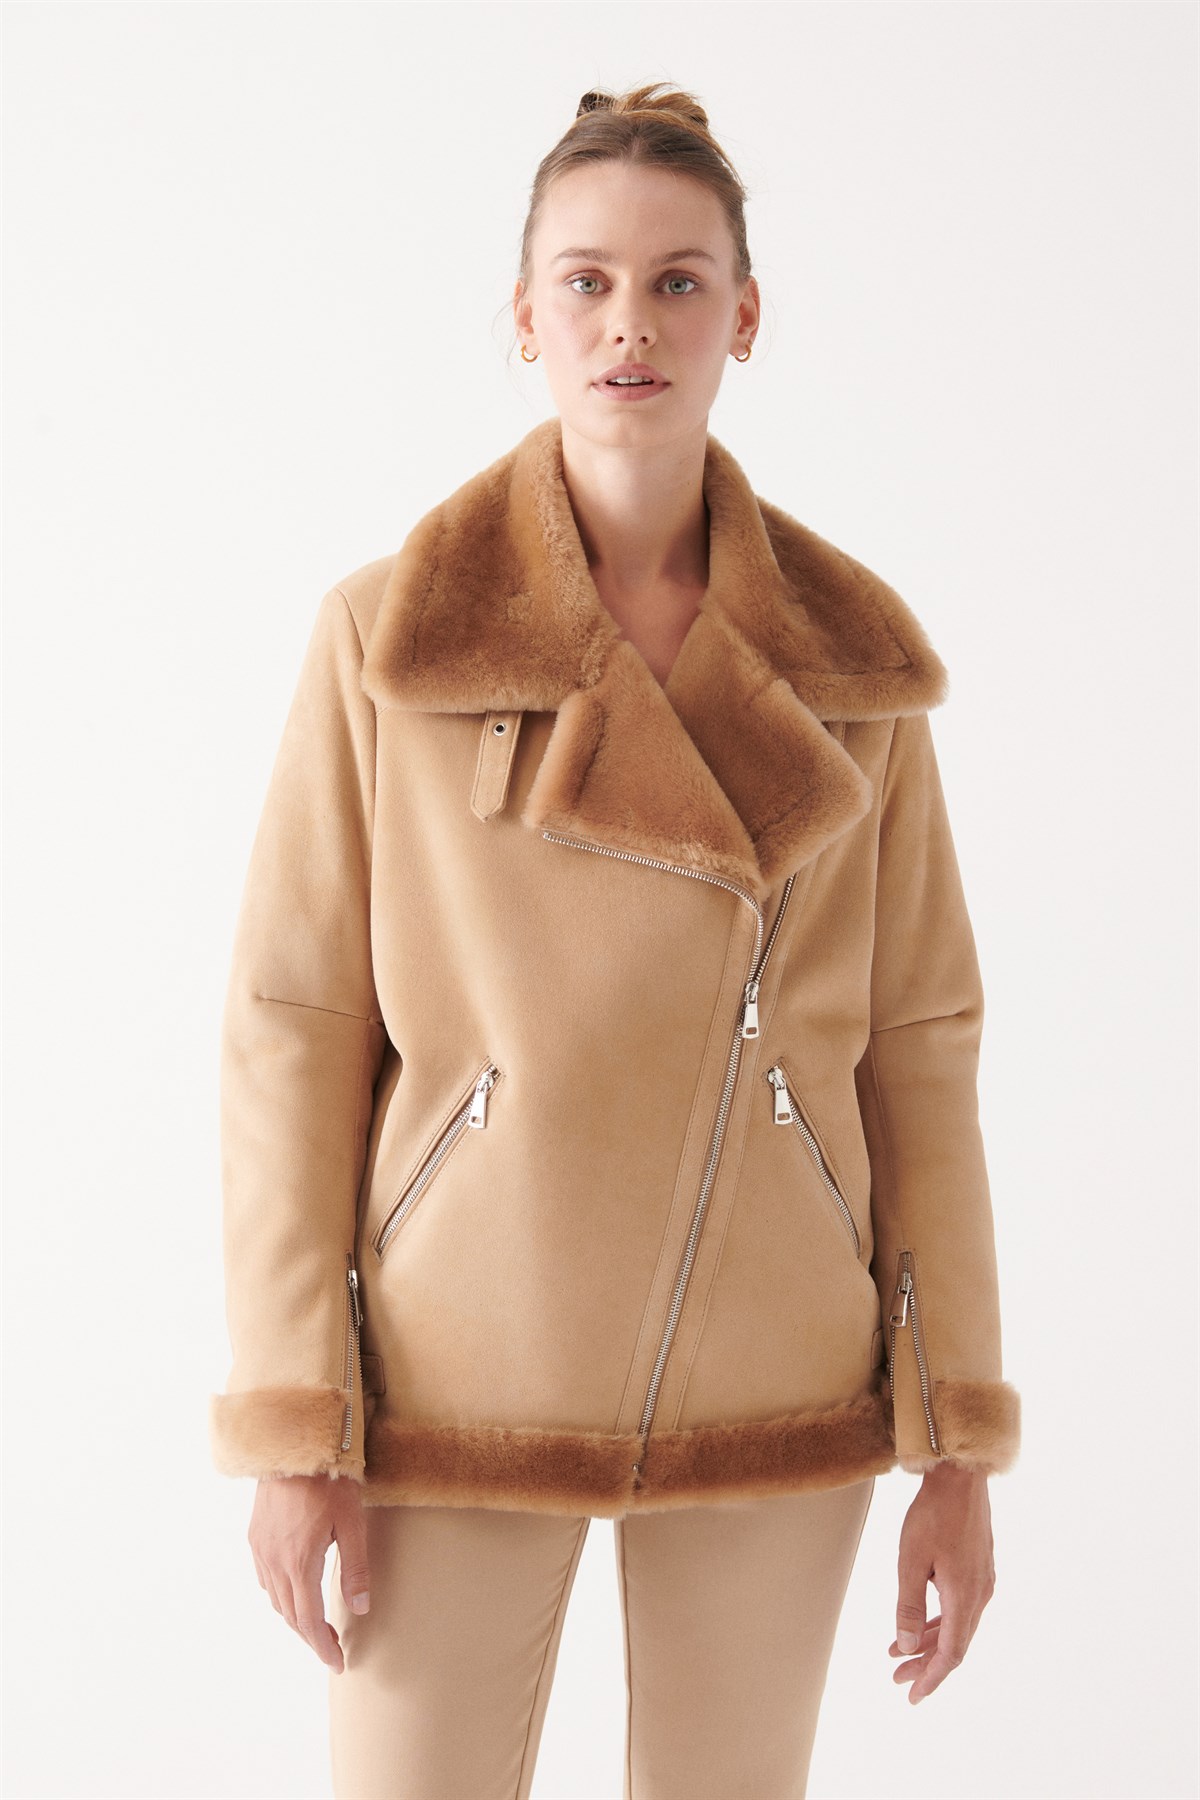 Violeta by mango Long coat Brown XXL WOMEN FASHION Coats Long coat Suede leather discount 64% 